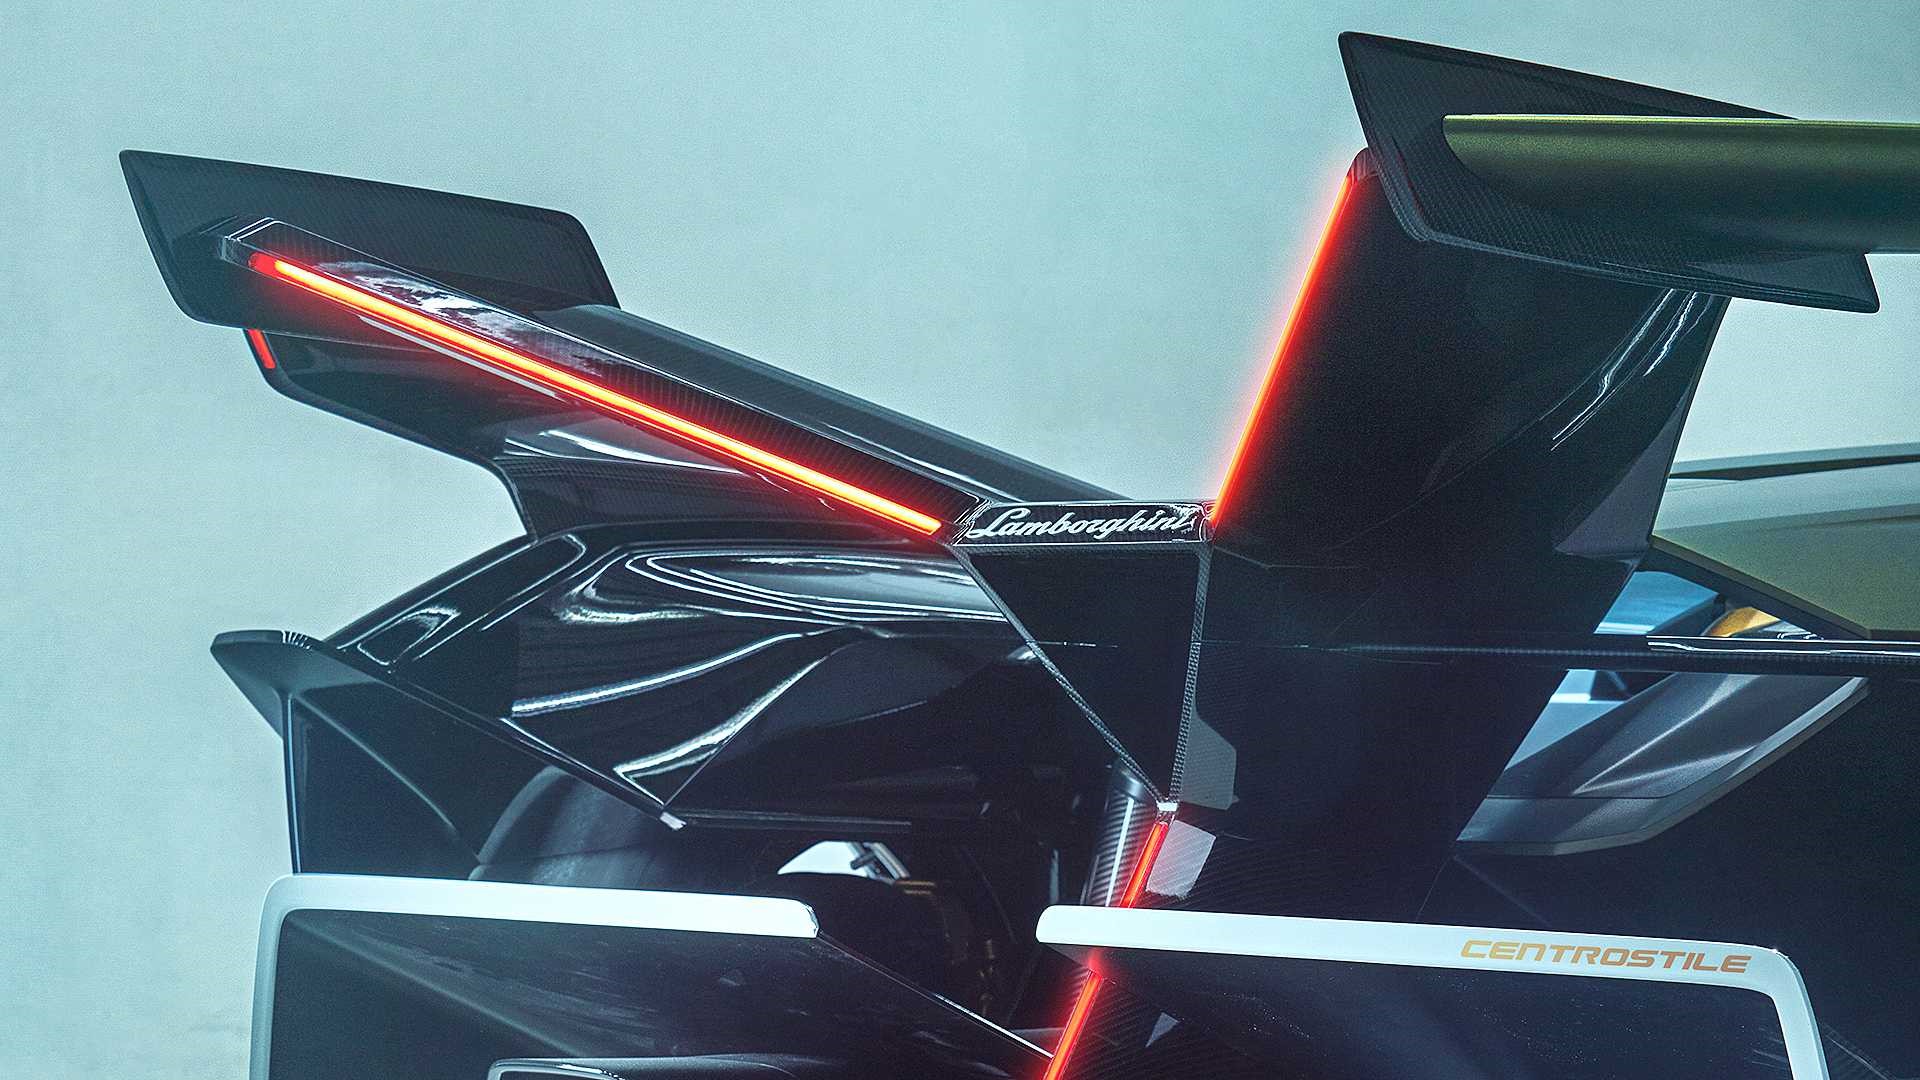 藍寶堅尼新款概念跑車VGT發布 設計驚豔造型科幻